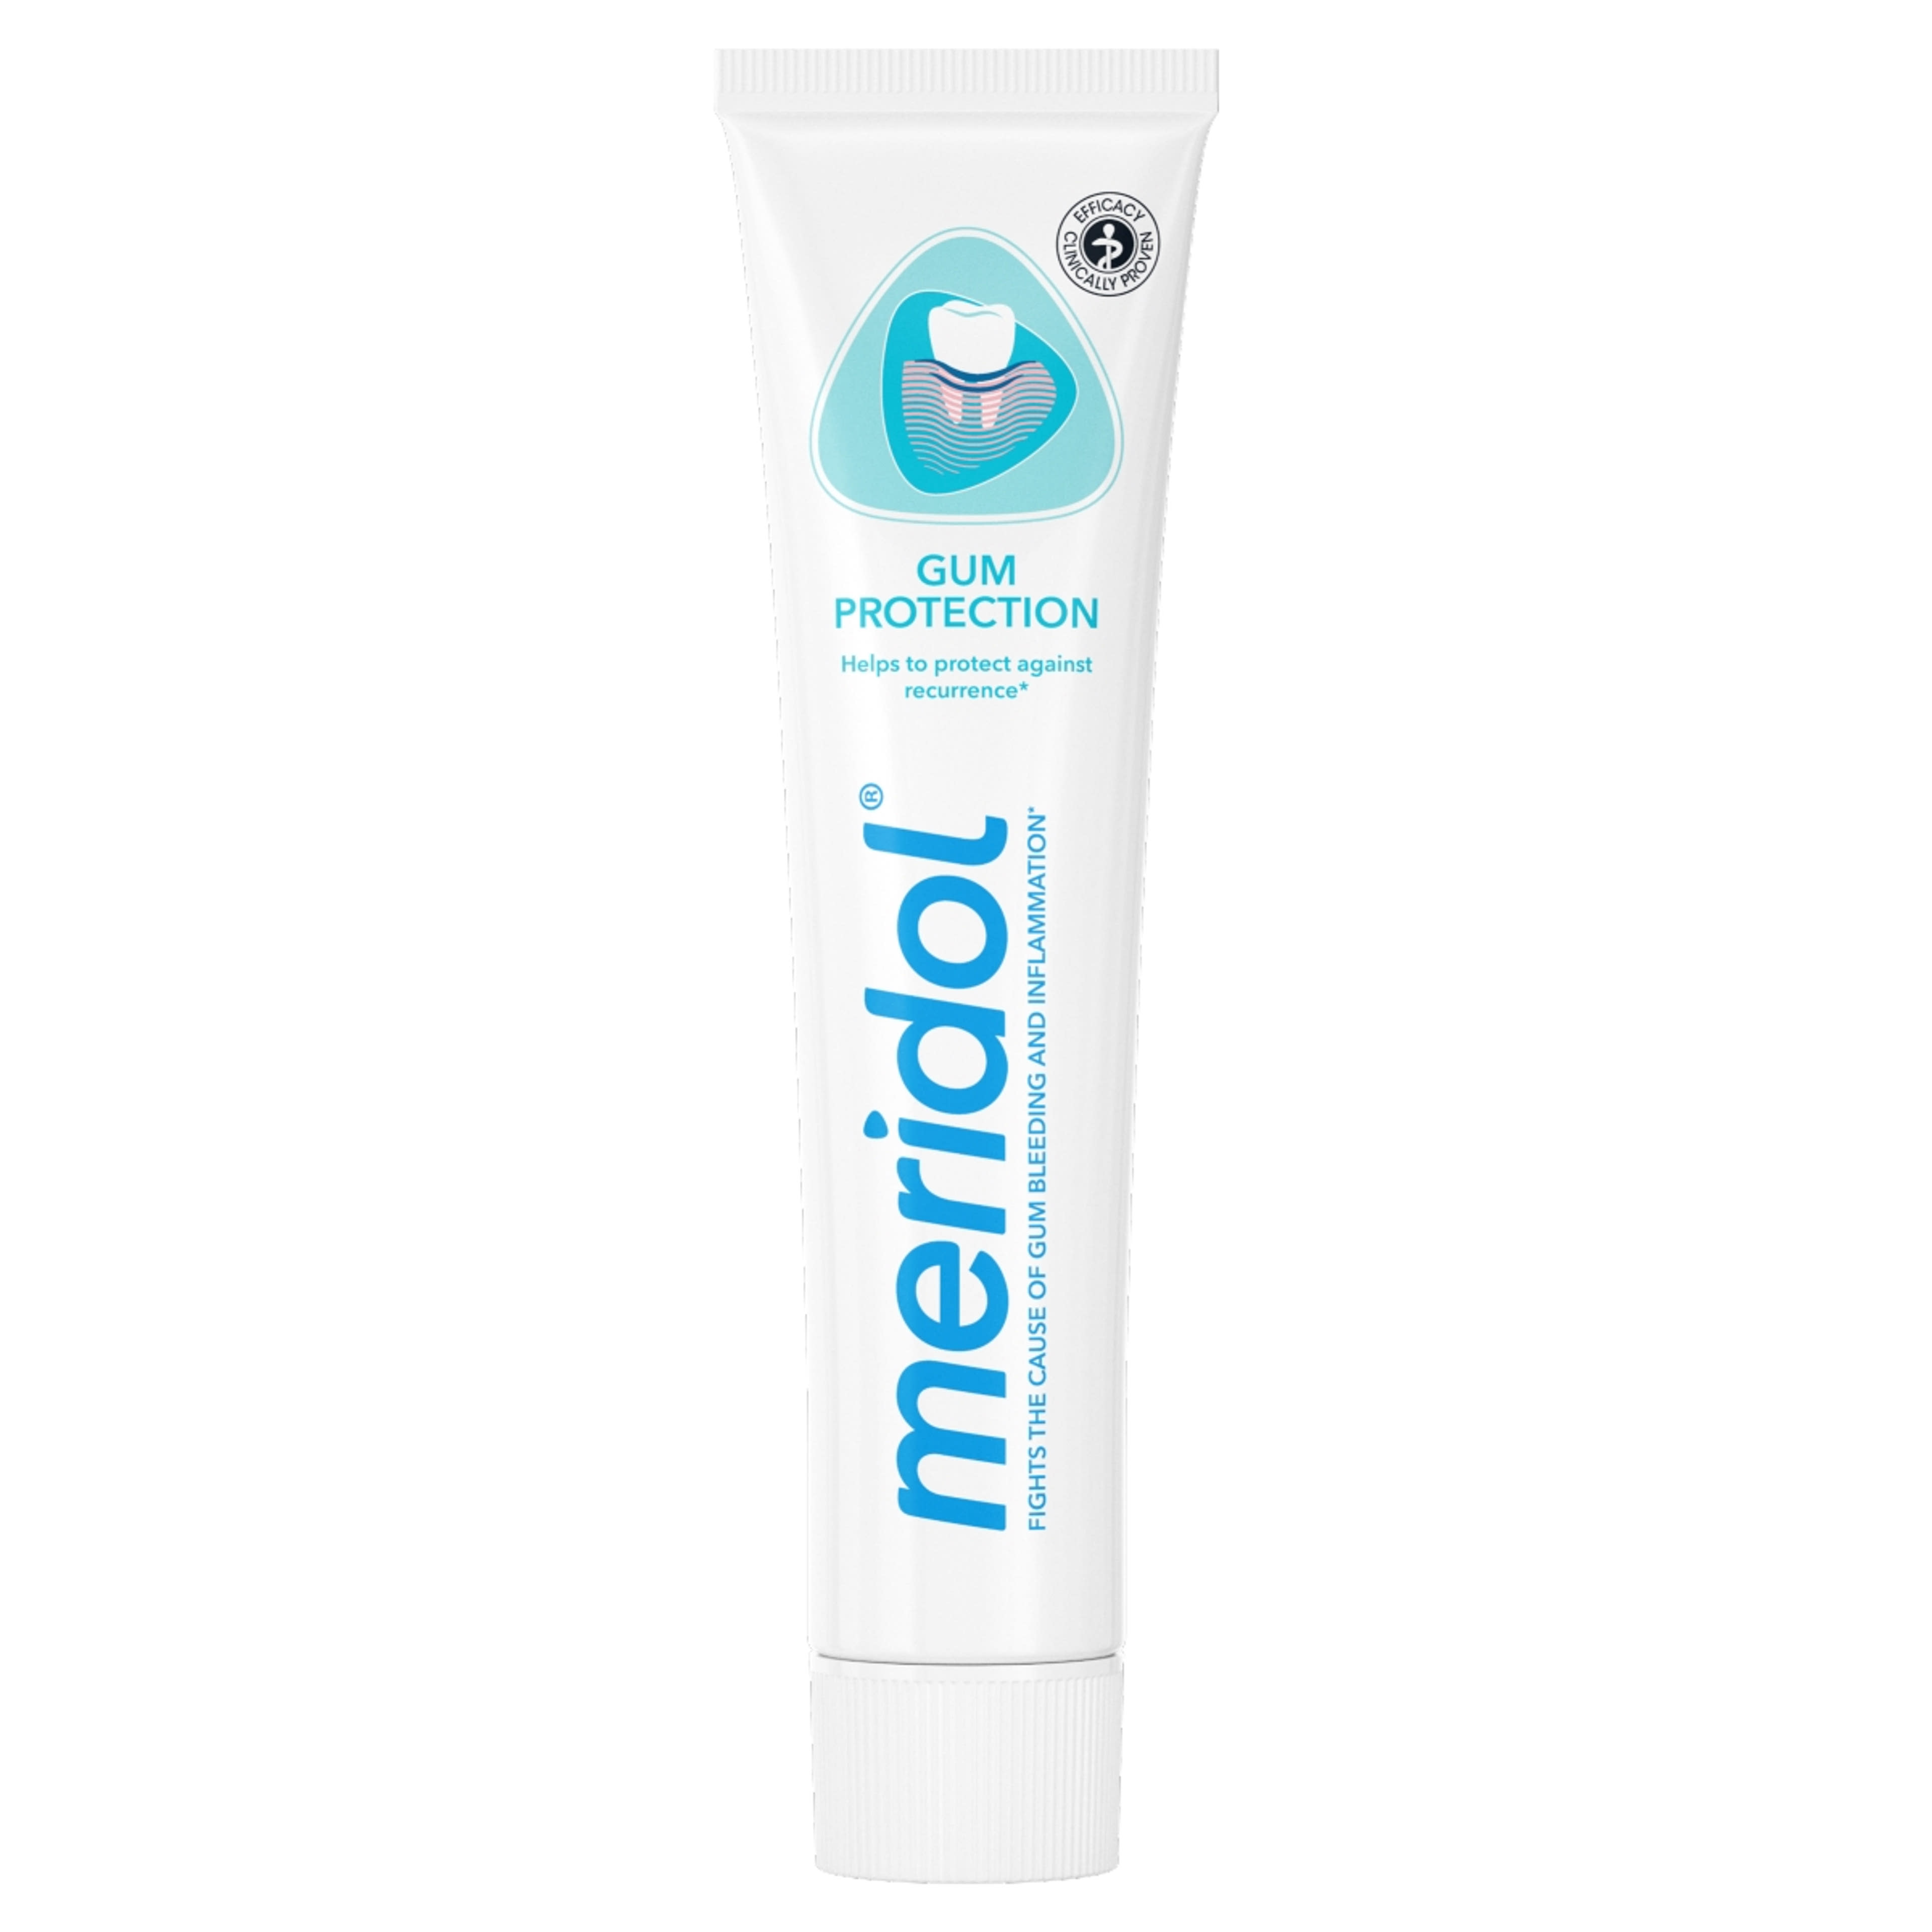 Meridol Gum Protection fogkrém az íny védelmére és ínyvérzés ellen - 75 ml-2